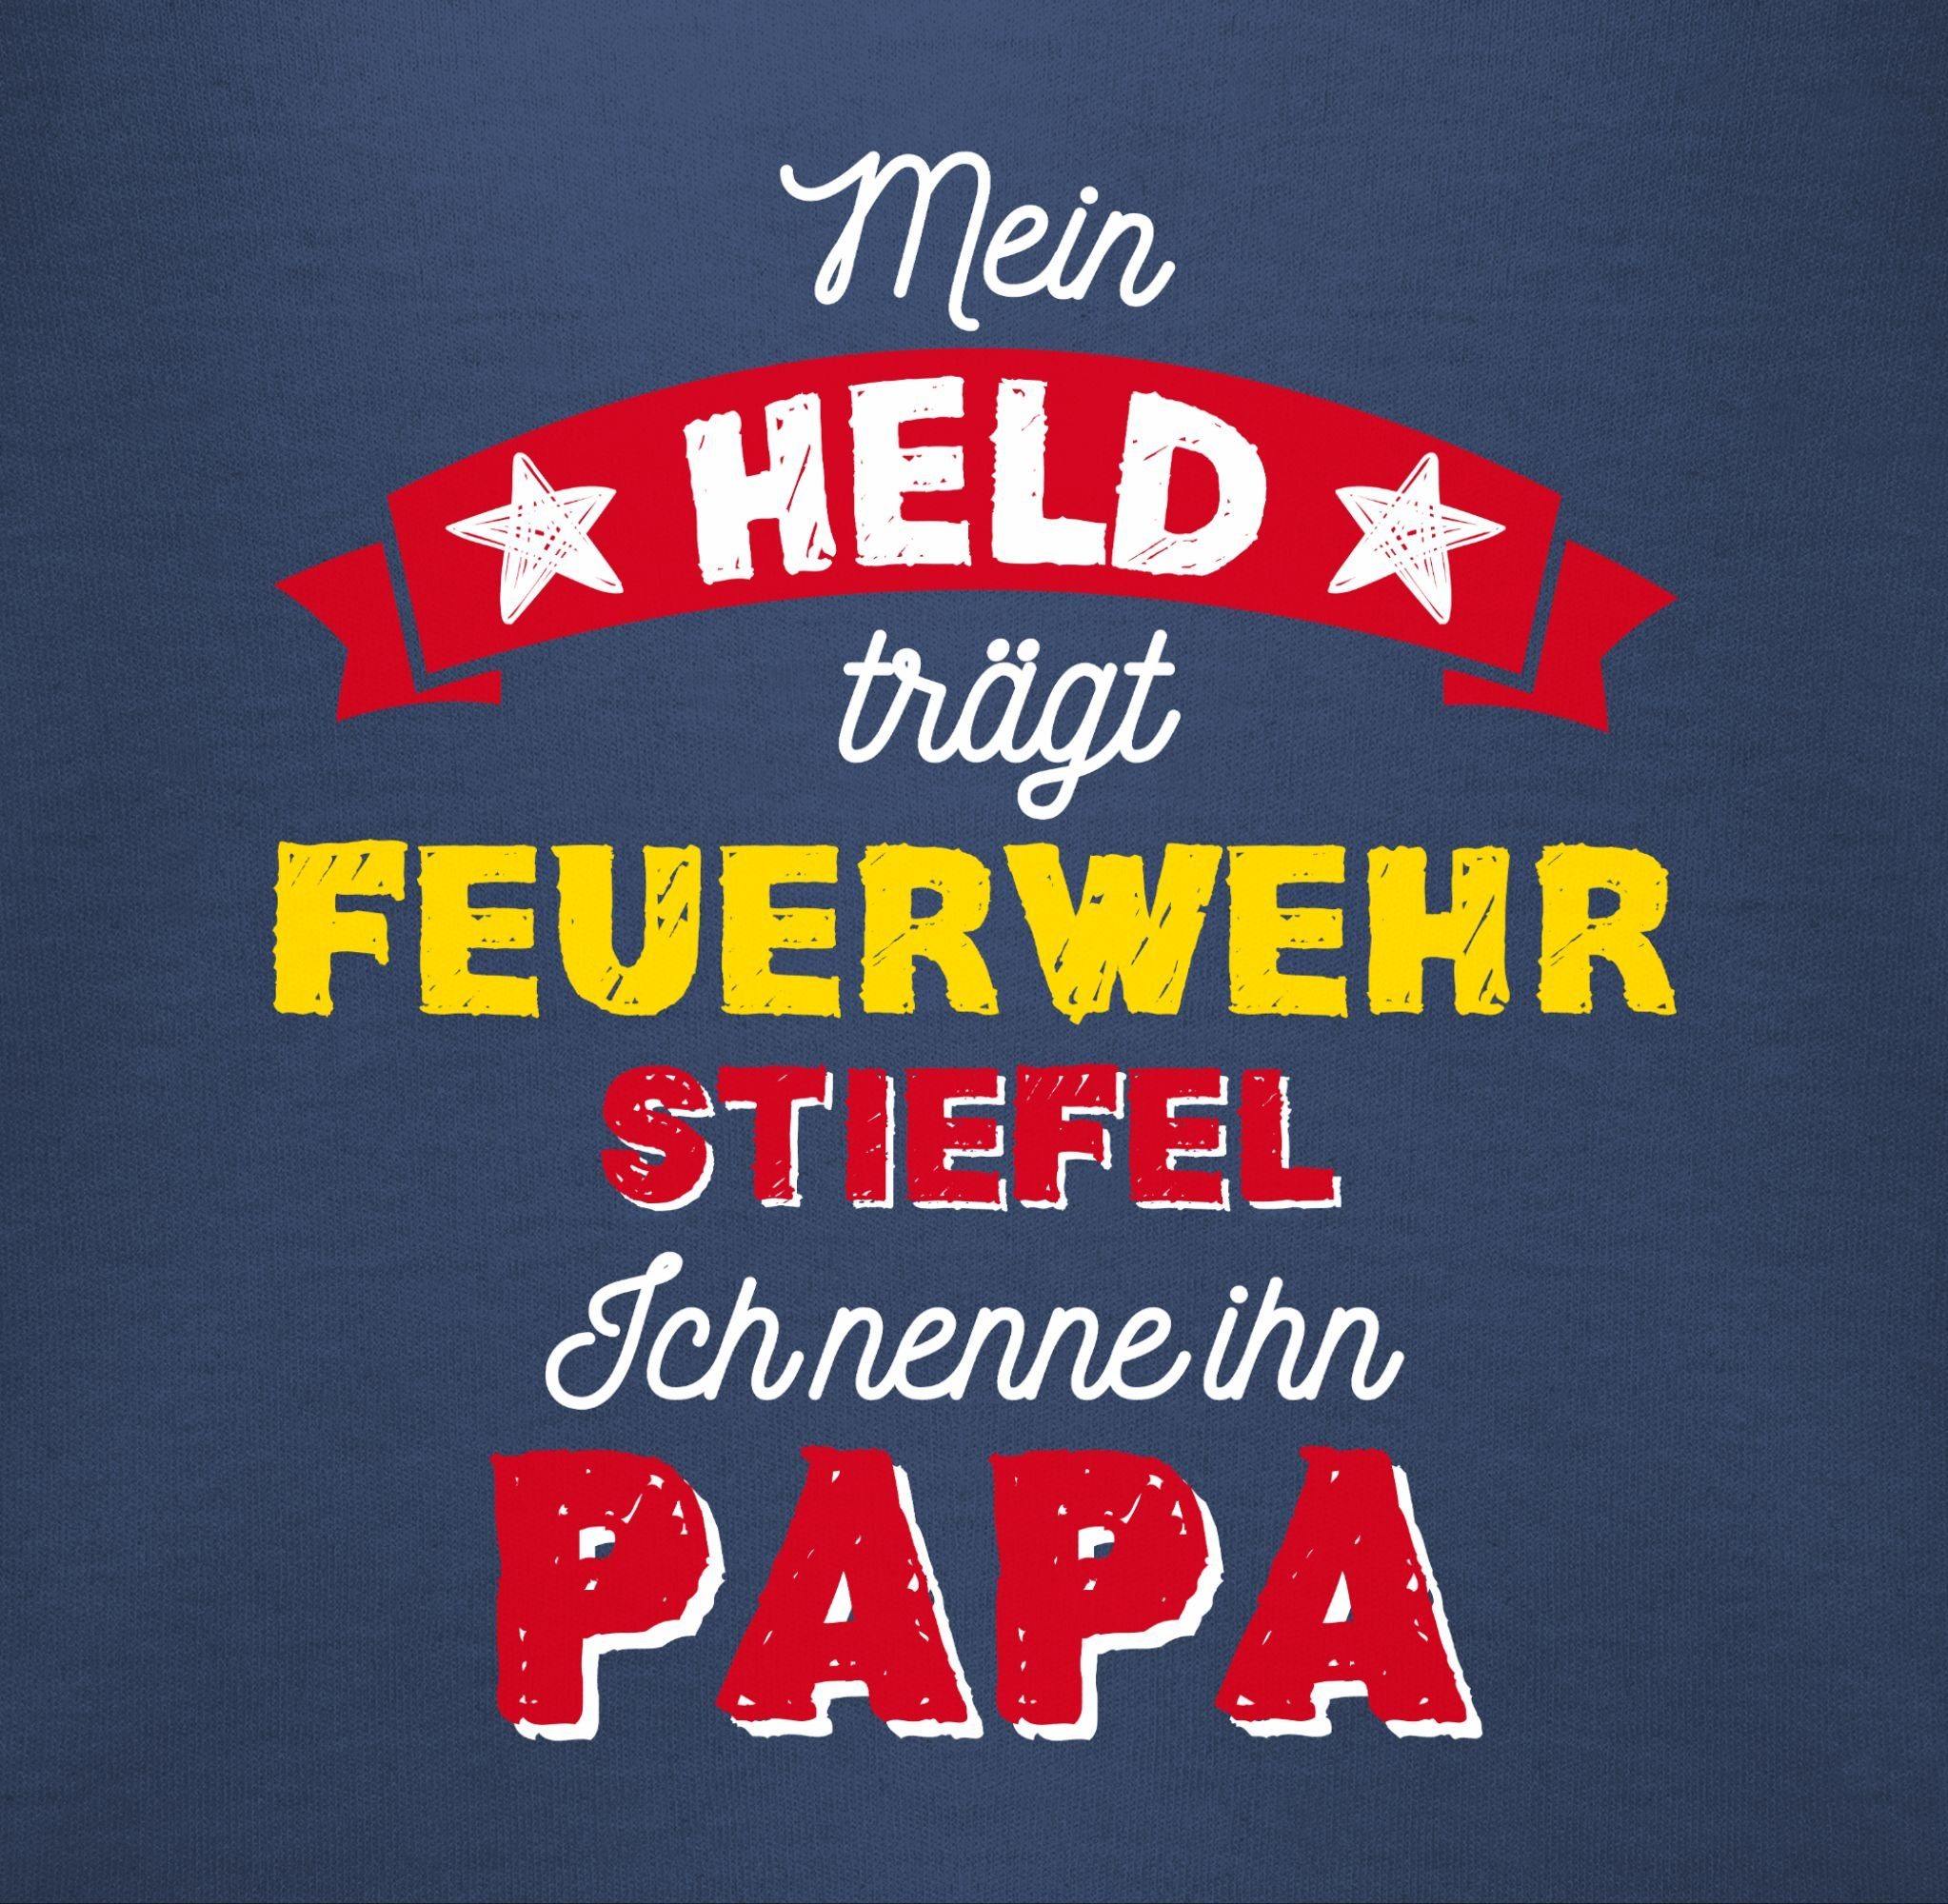 Shirtracer Vatertag Feuerwehrstiefel trägt Held Shirtbody Geschenk Navy Baby Mein Blau 1